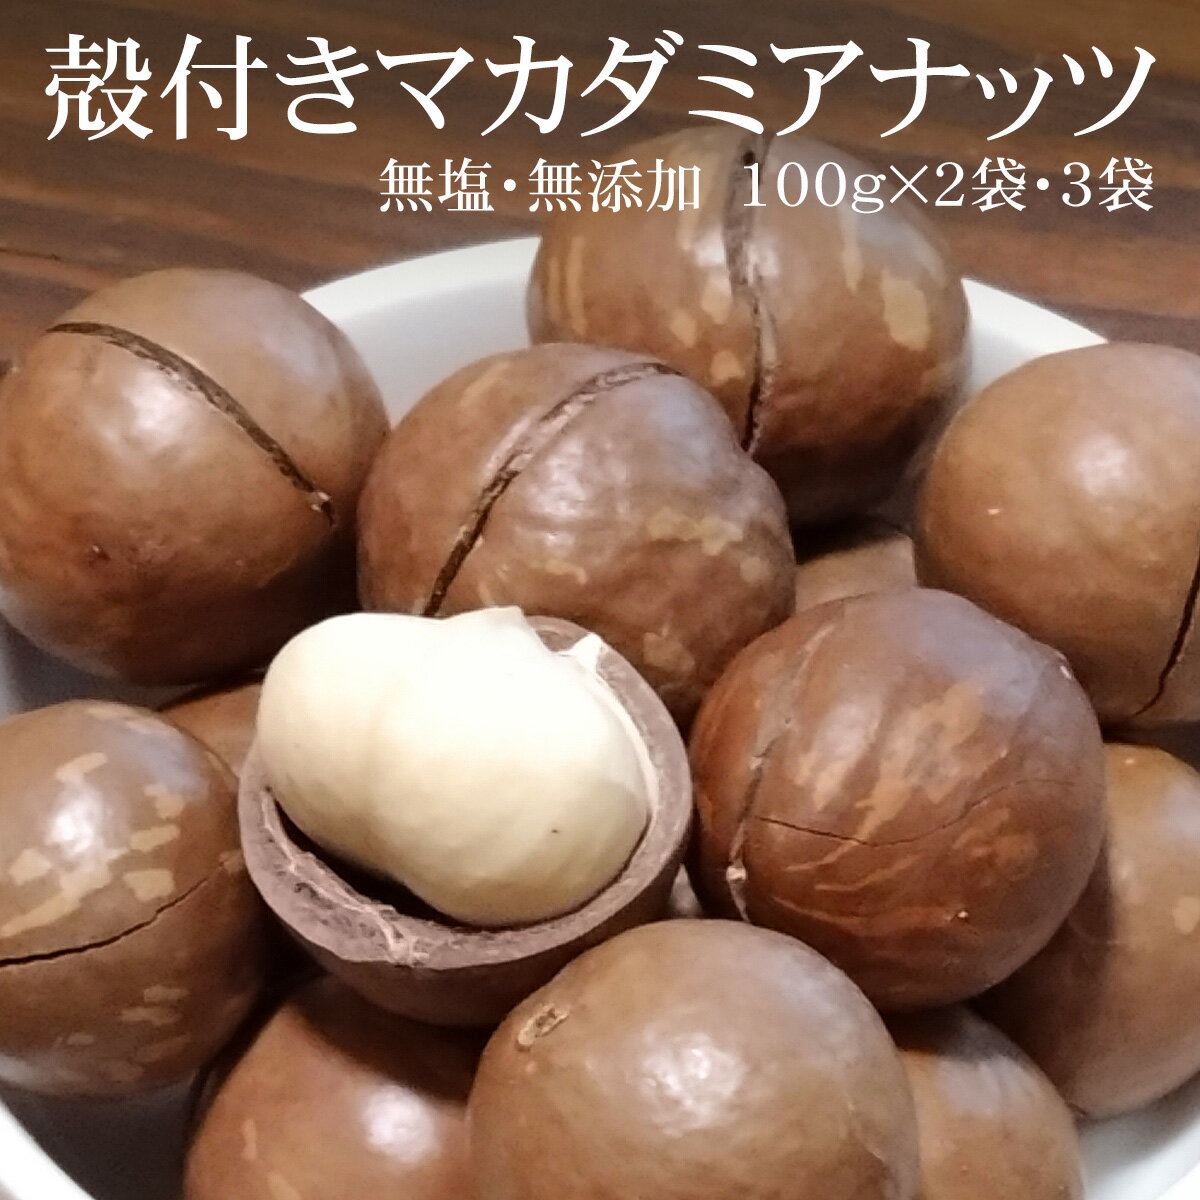 殻付きマカダミアナッツ(無塩) 100g×2袋/3袋 (専用